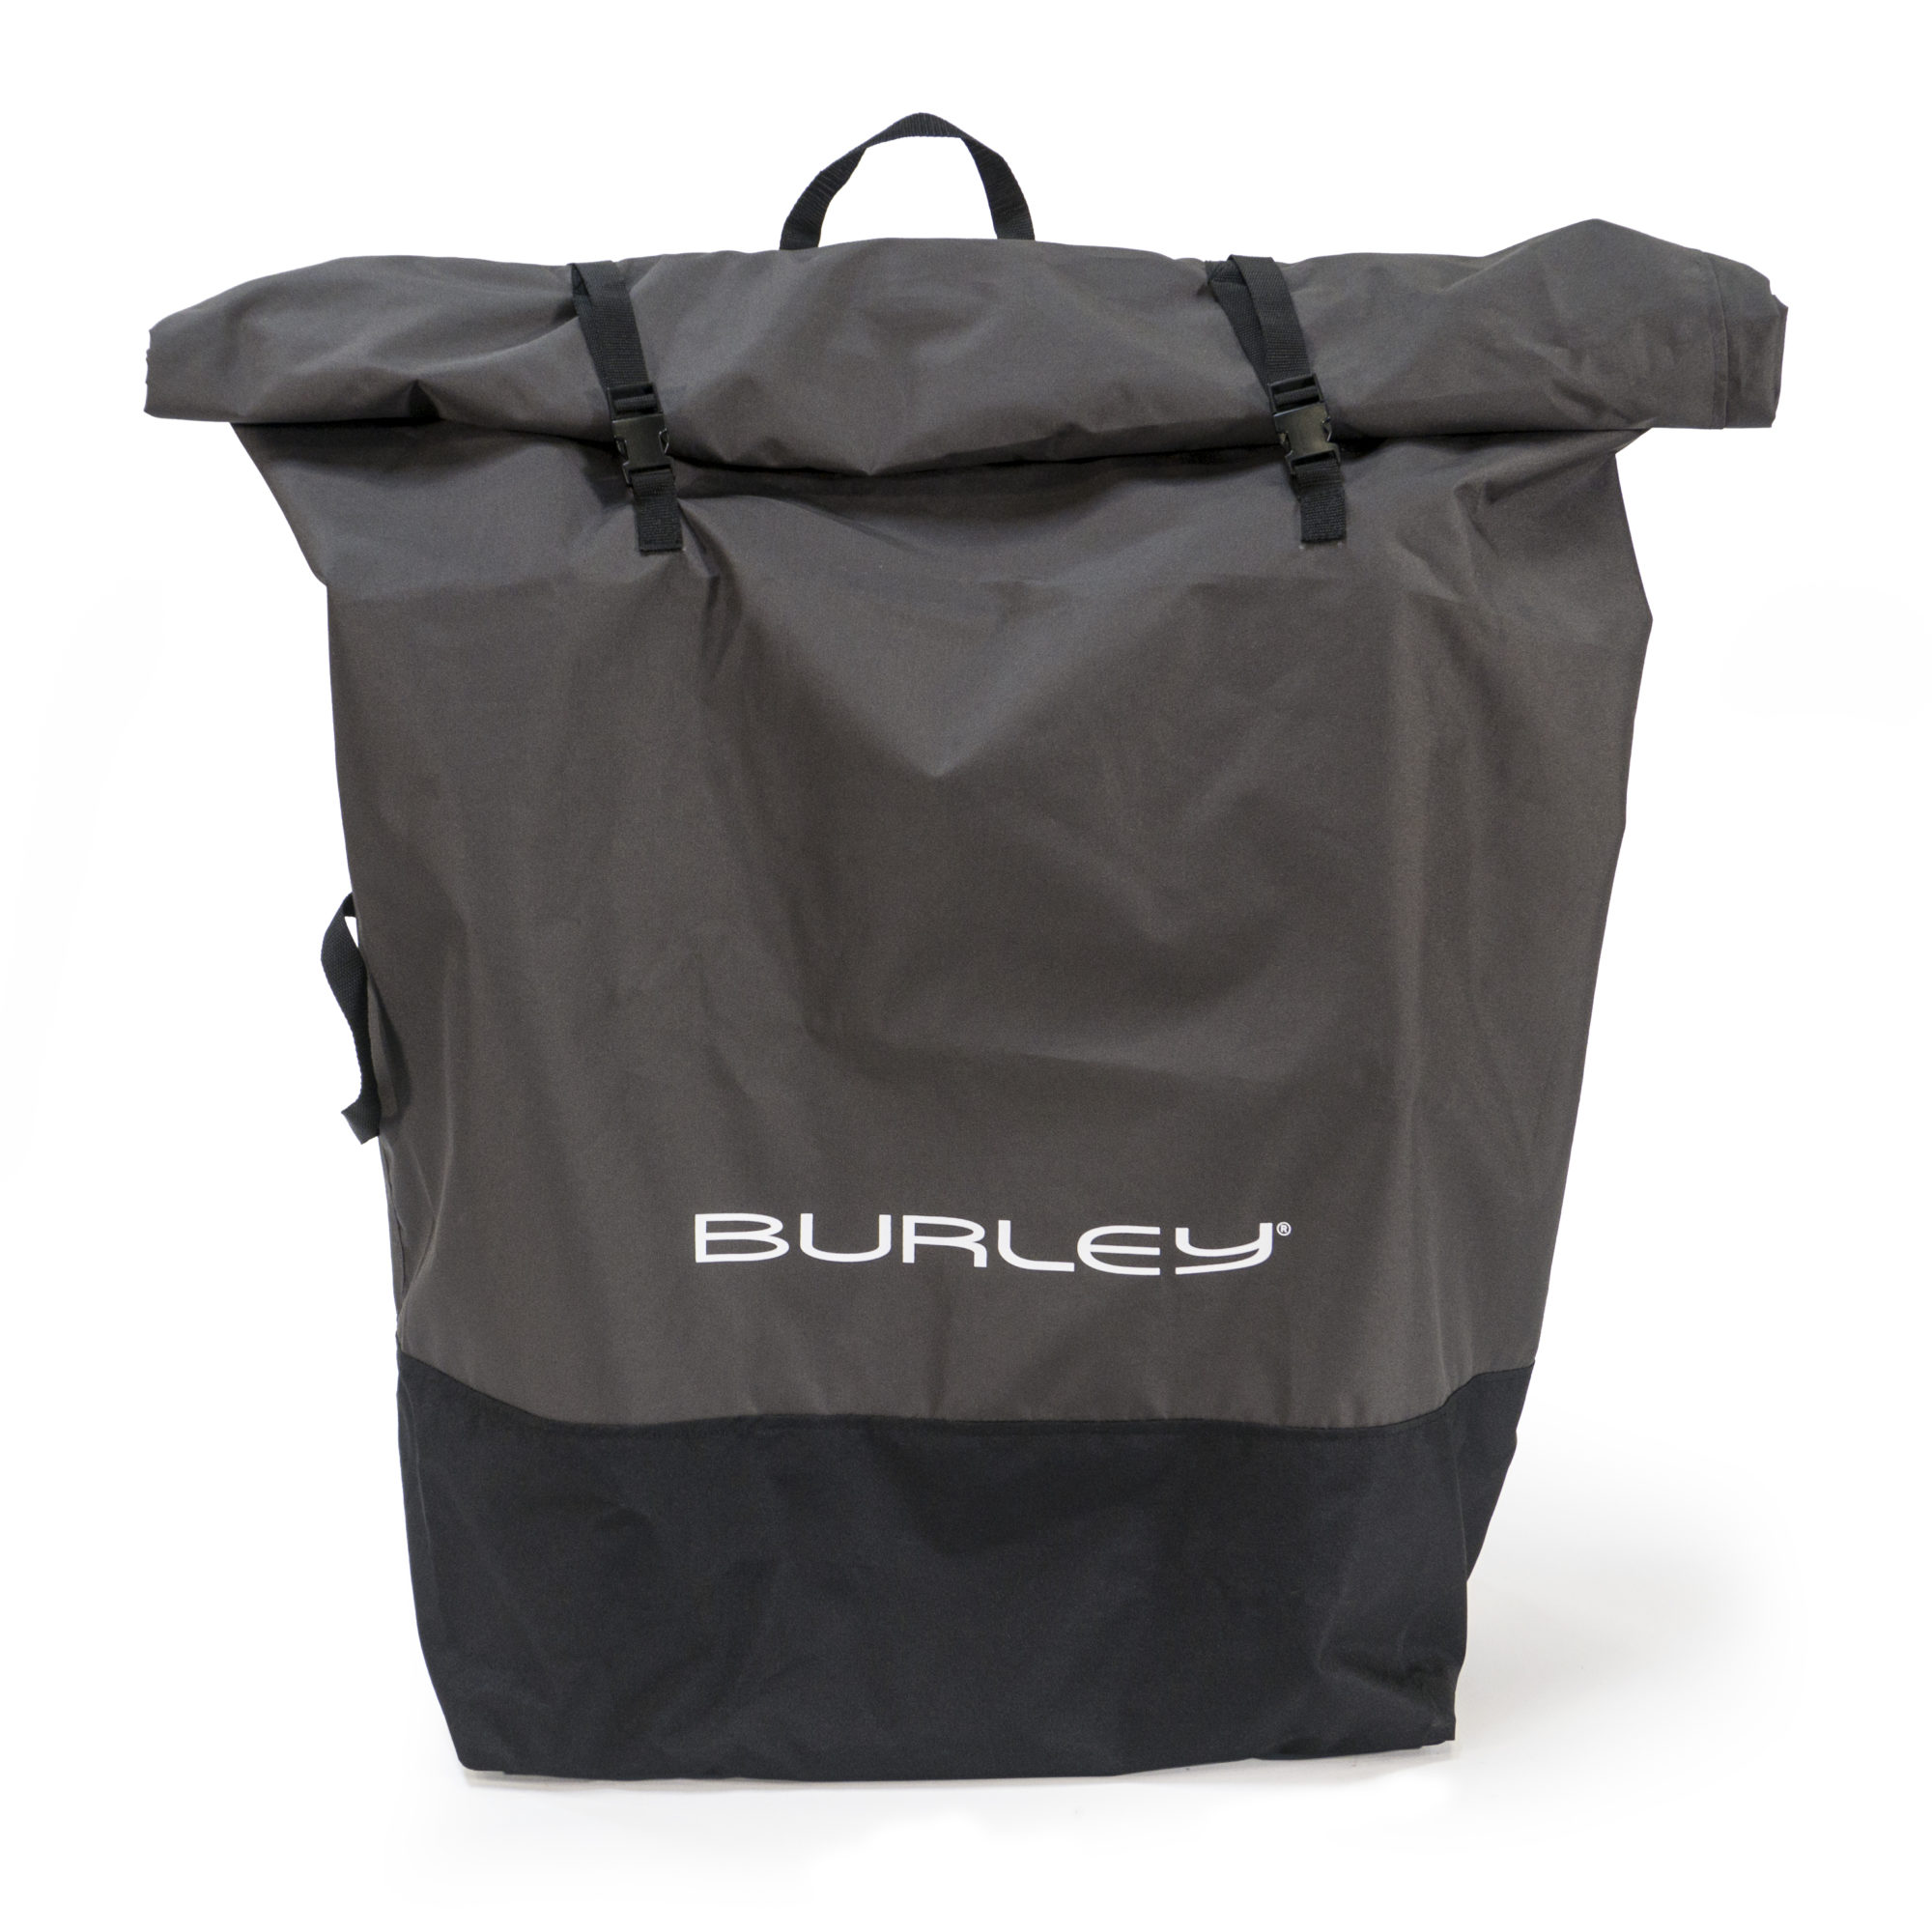 トレーラーストレージバッグ - 公式バーレー(Burley)自転車用ベビーカー,サイクルトレーラー